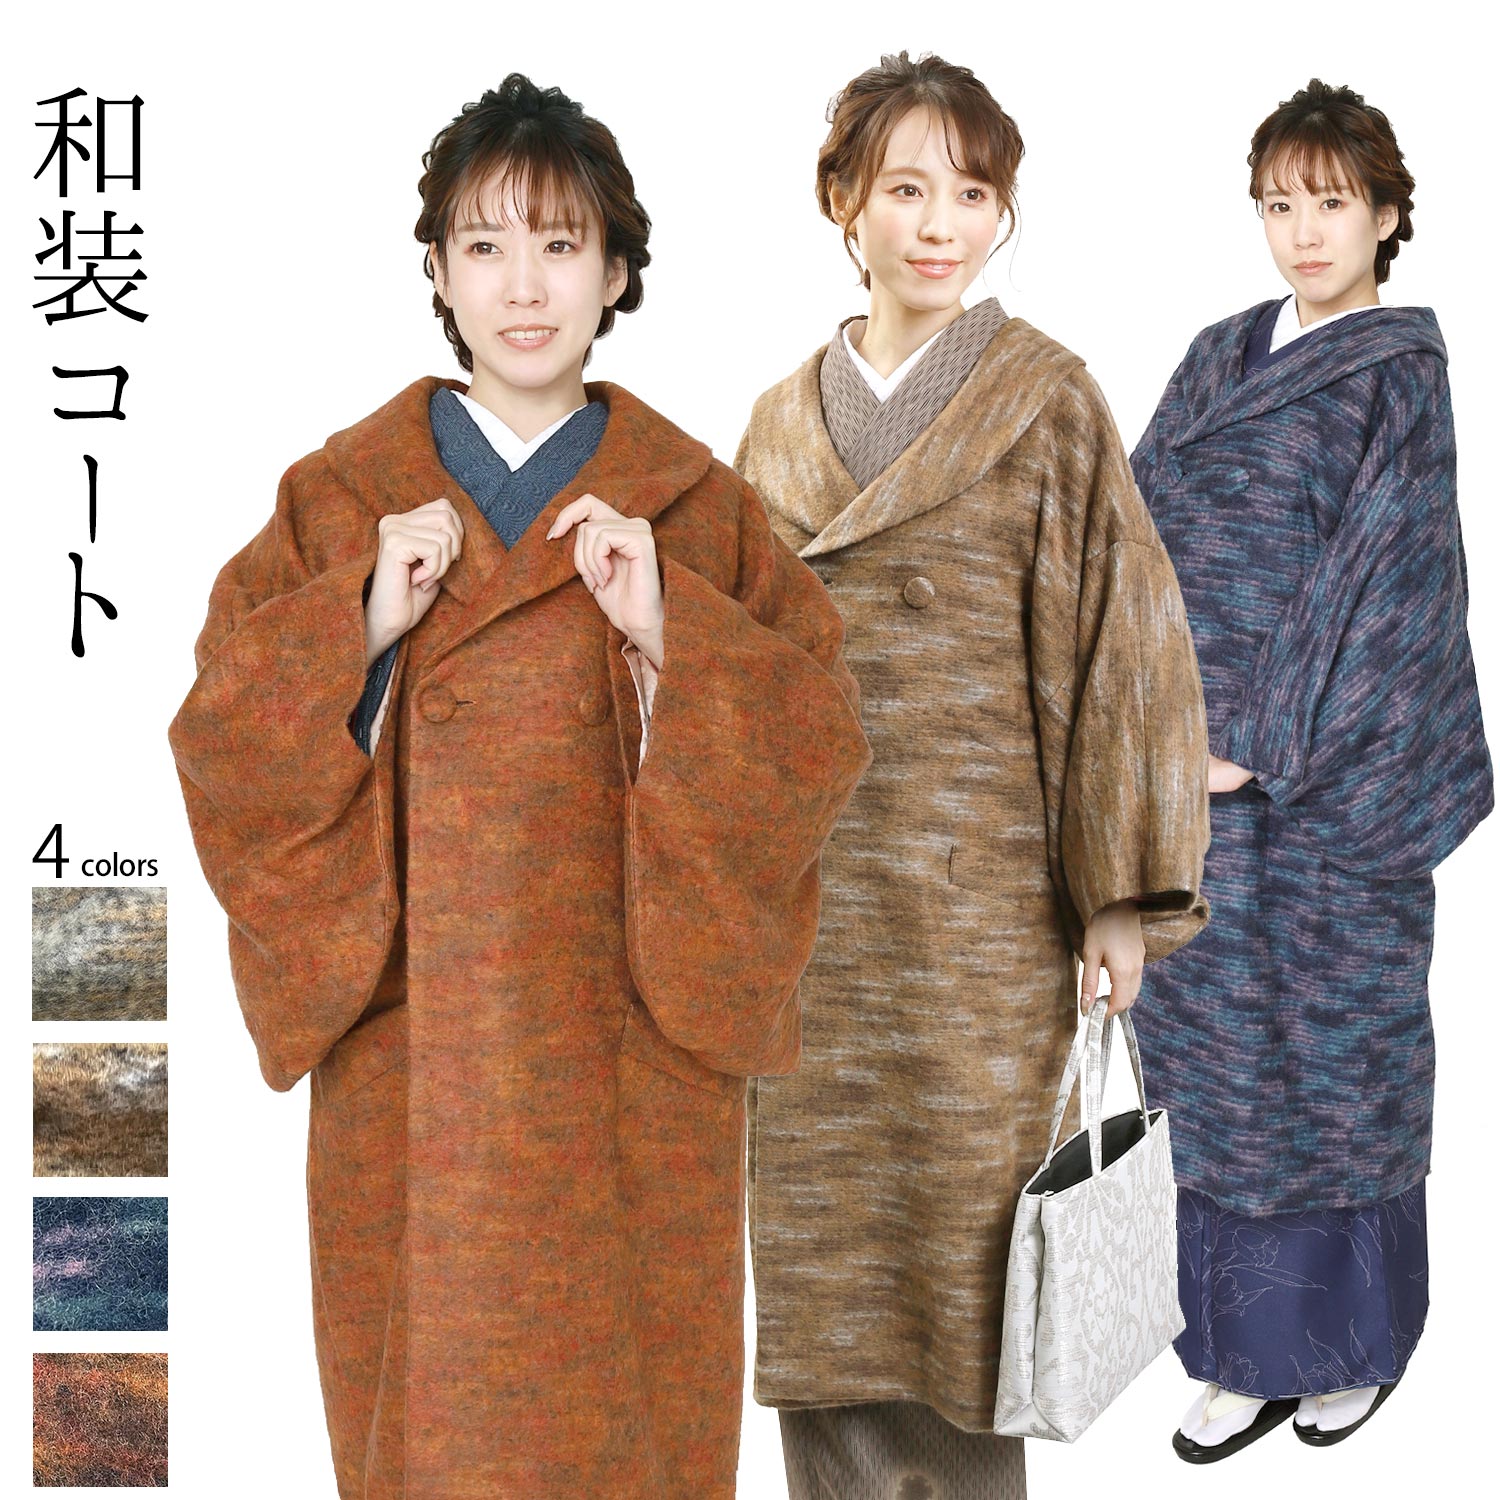 和装コート 日本製 きものコート キャメル色 ヨネオリ 米おり カシミア混